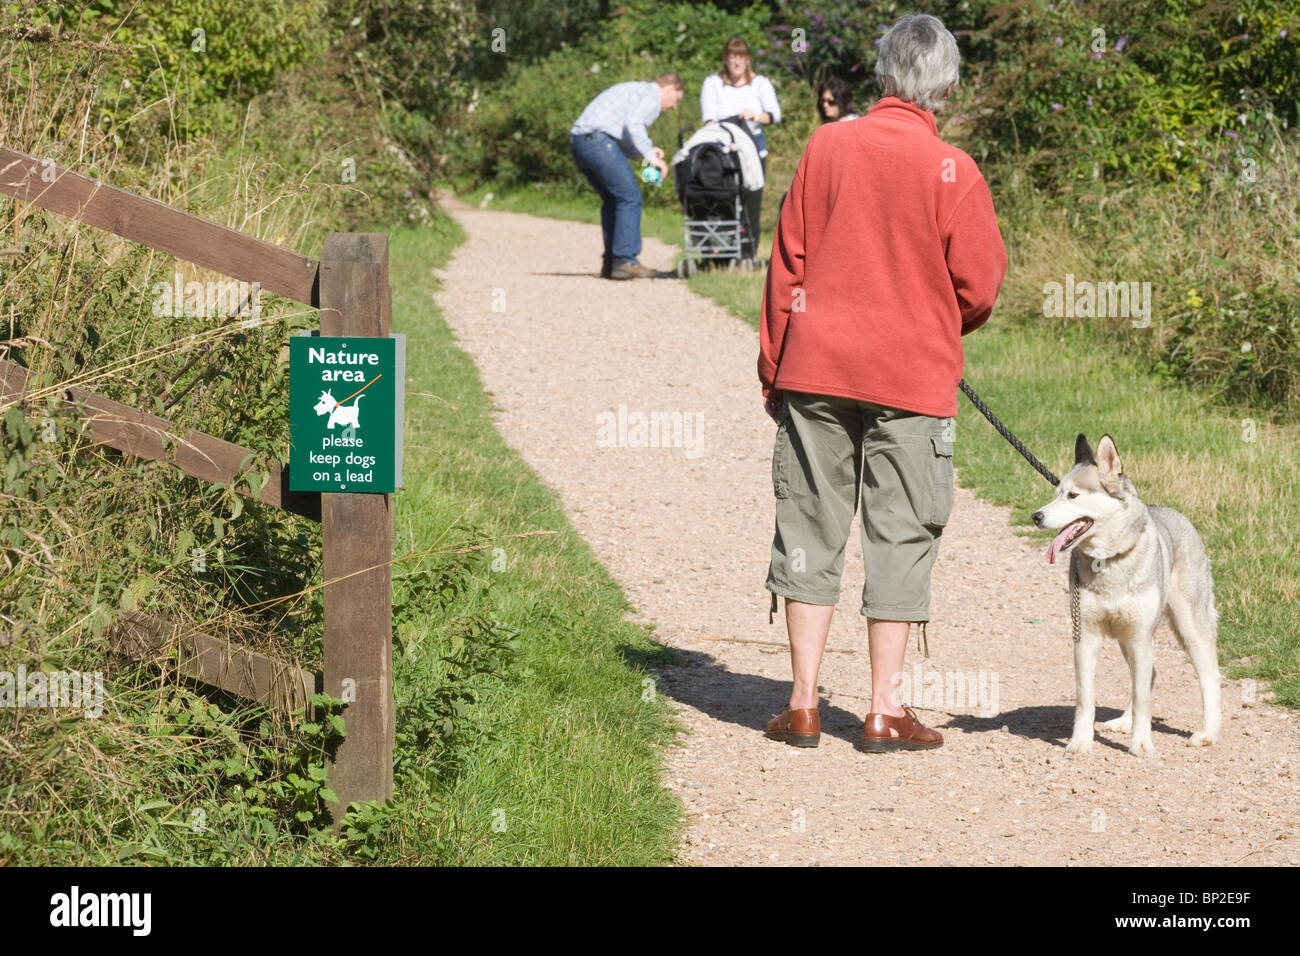 Zeichen festlegen ein Naturgebiet, in dem Hunde an der Leine geführt werden müssen. Whitlingham Park, Norwich, Norfolk, Großbritannien Stockfoto